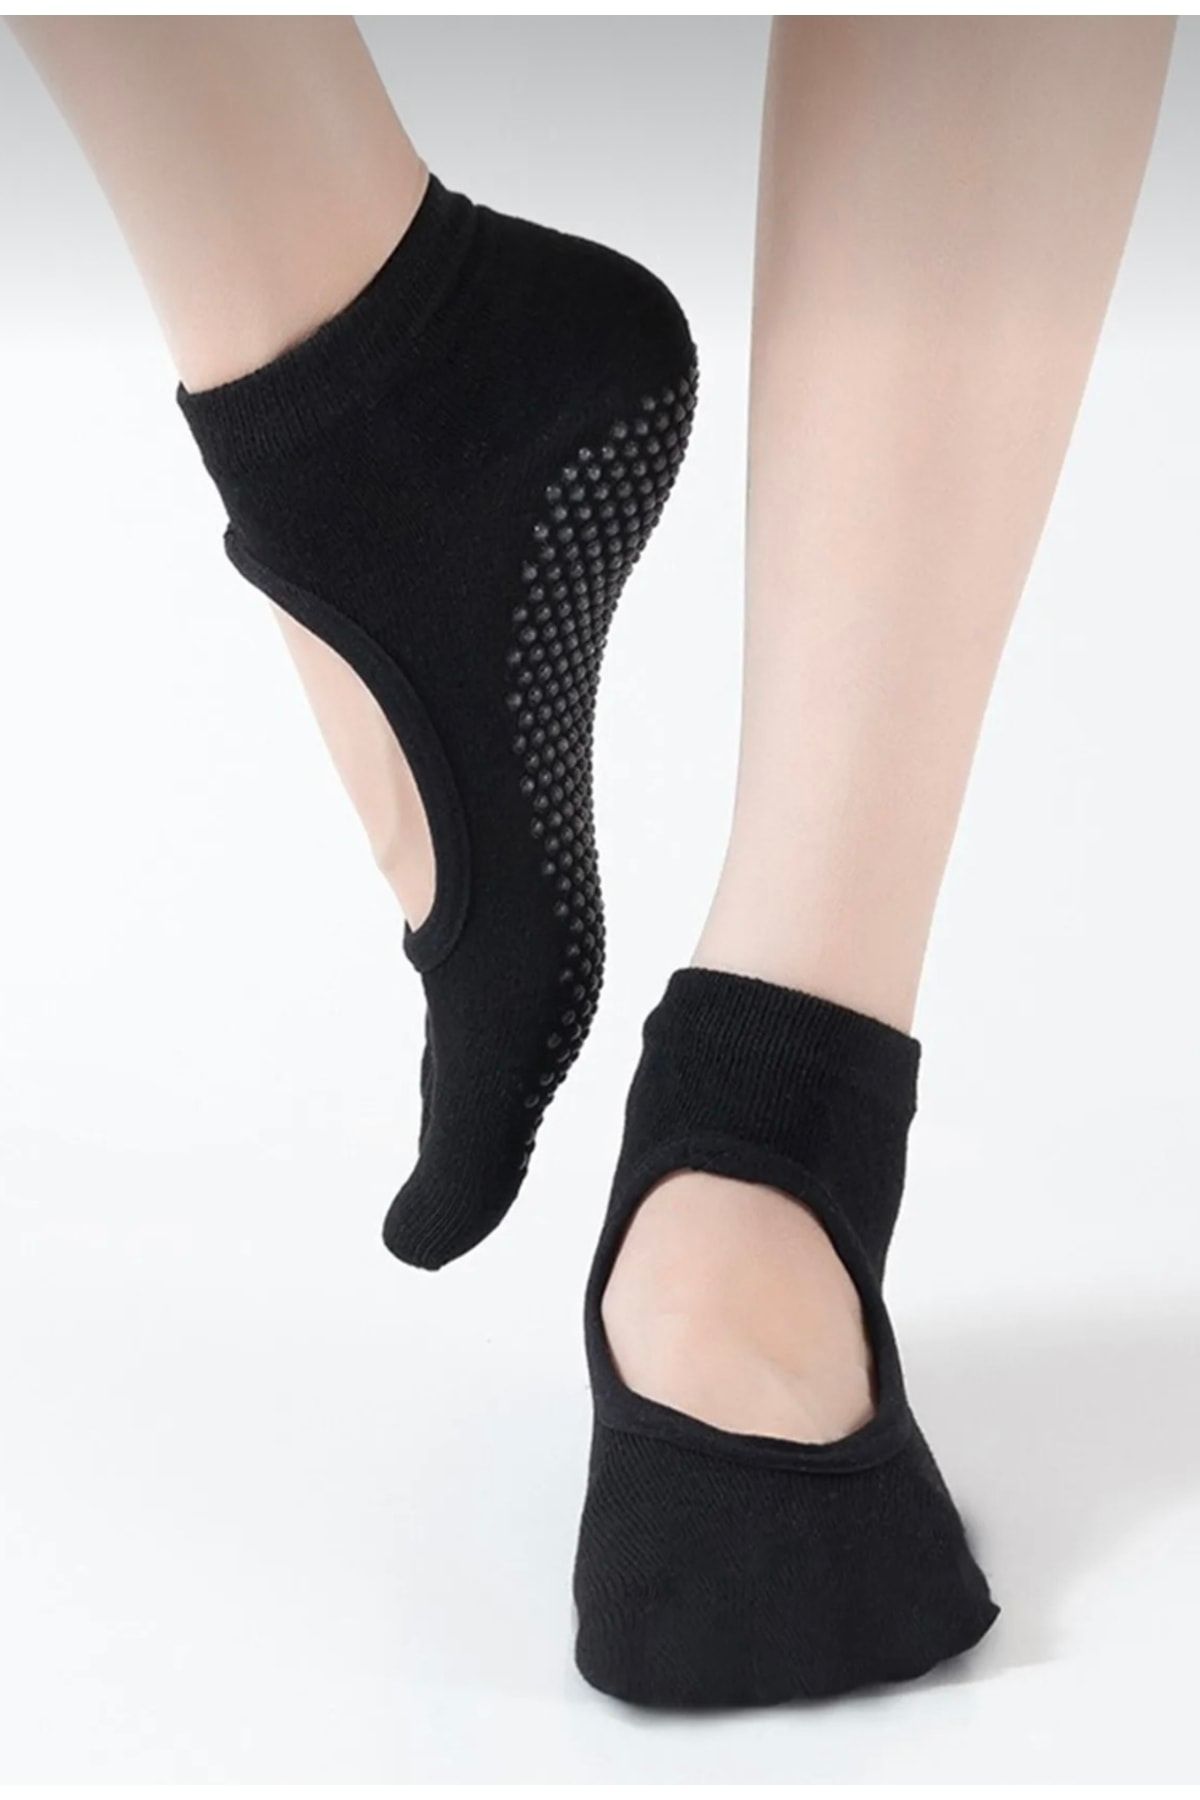 Fancy Kadın Özel Kaydırmaz Taban Pilates Çorap 3 Adet